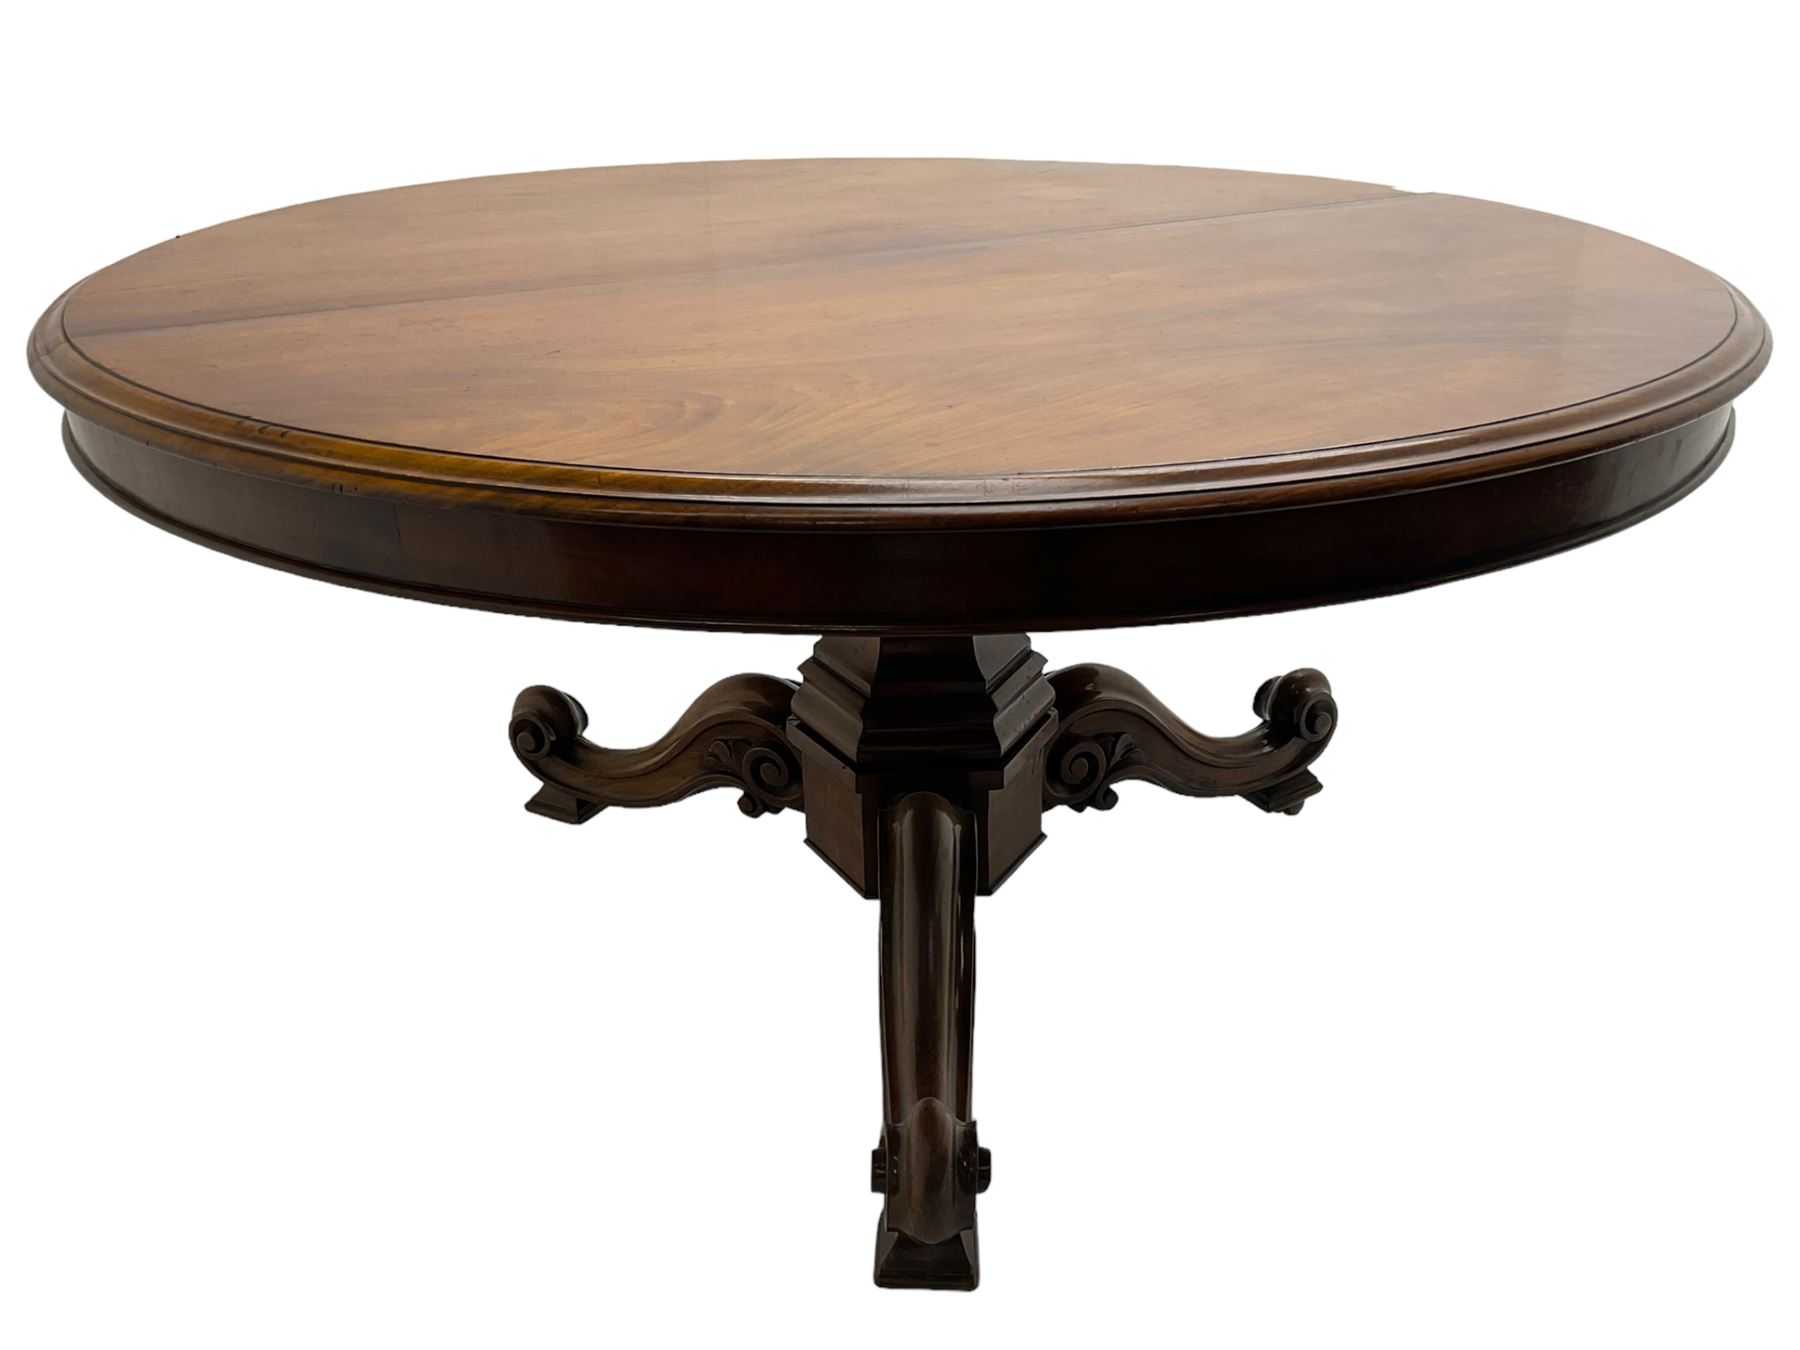 Early Victorian mahogany breakfast table - Image 2 of 7